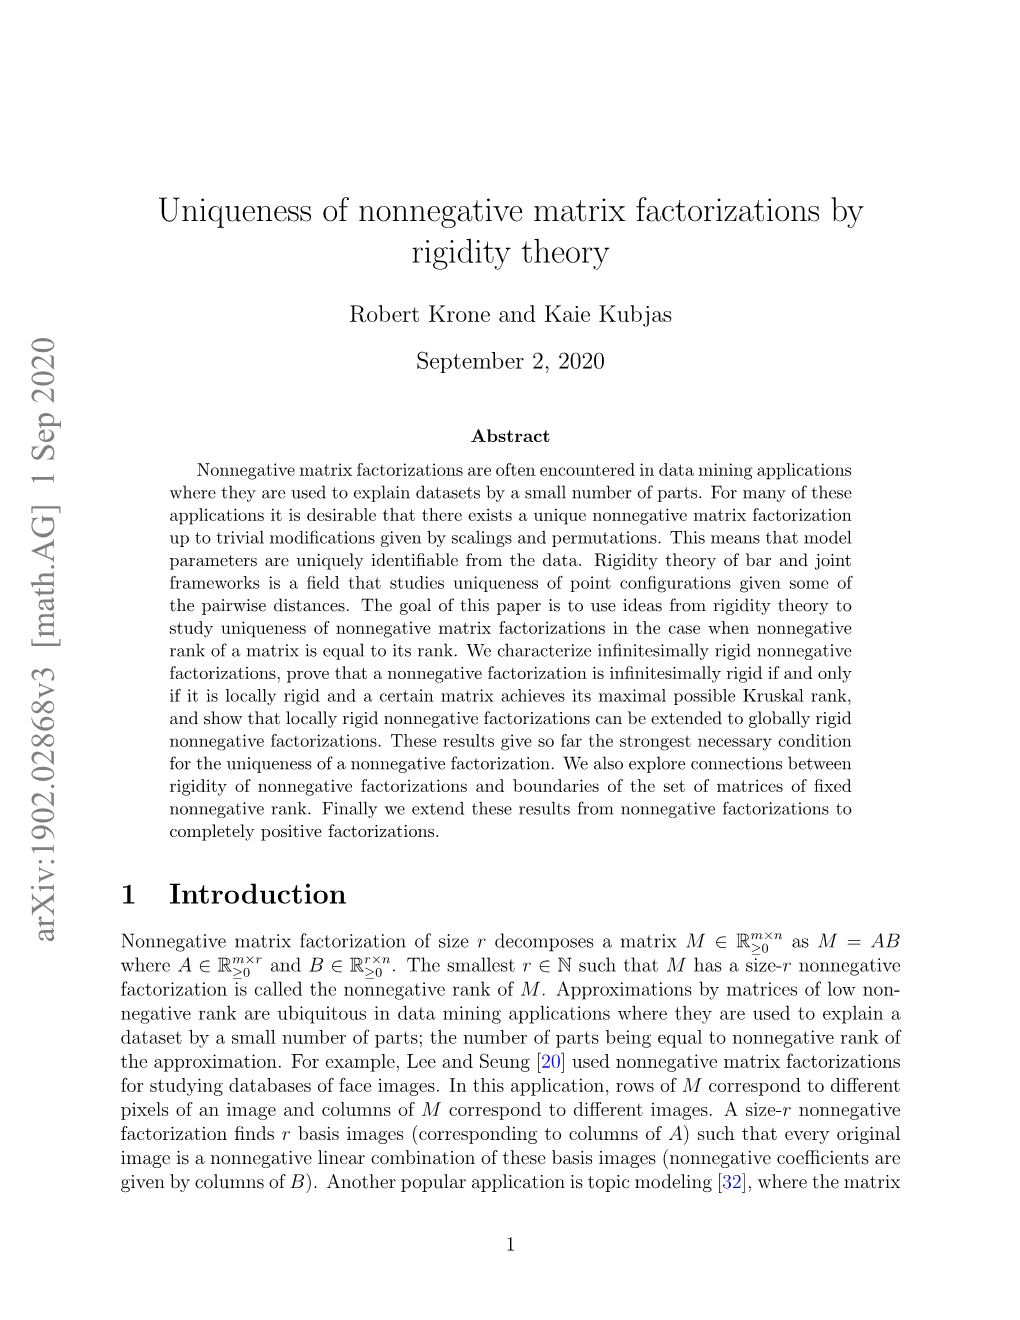 Uniqueness of Nonnegative Matrix Factorizations by Rigidity Theory Arxiv